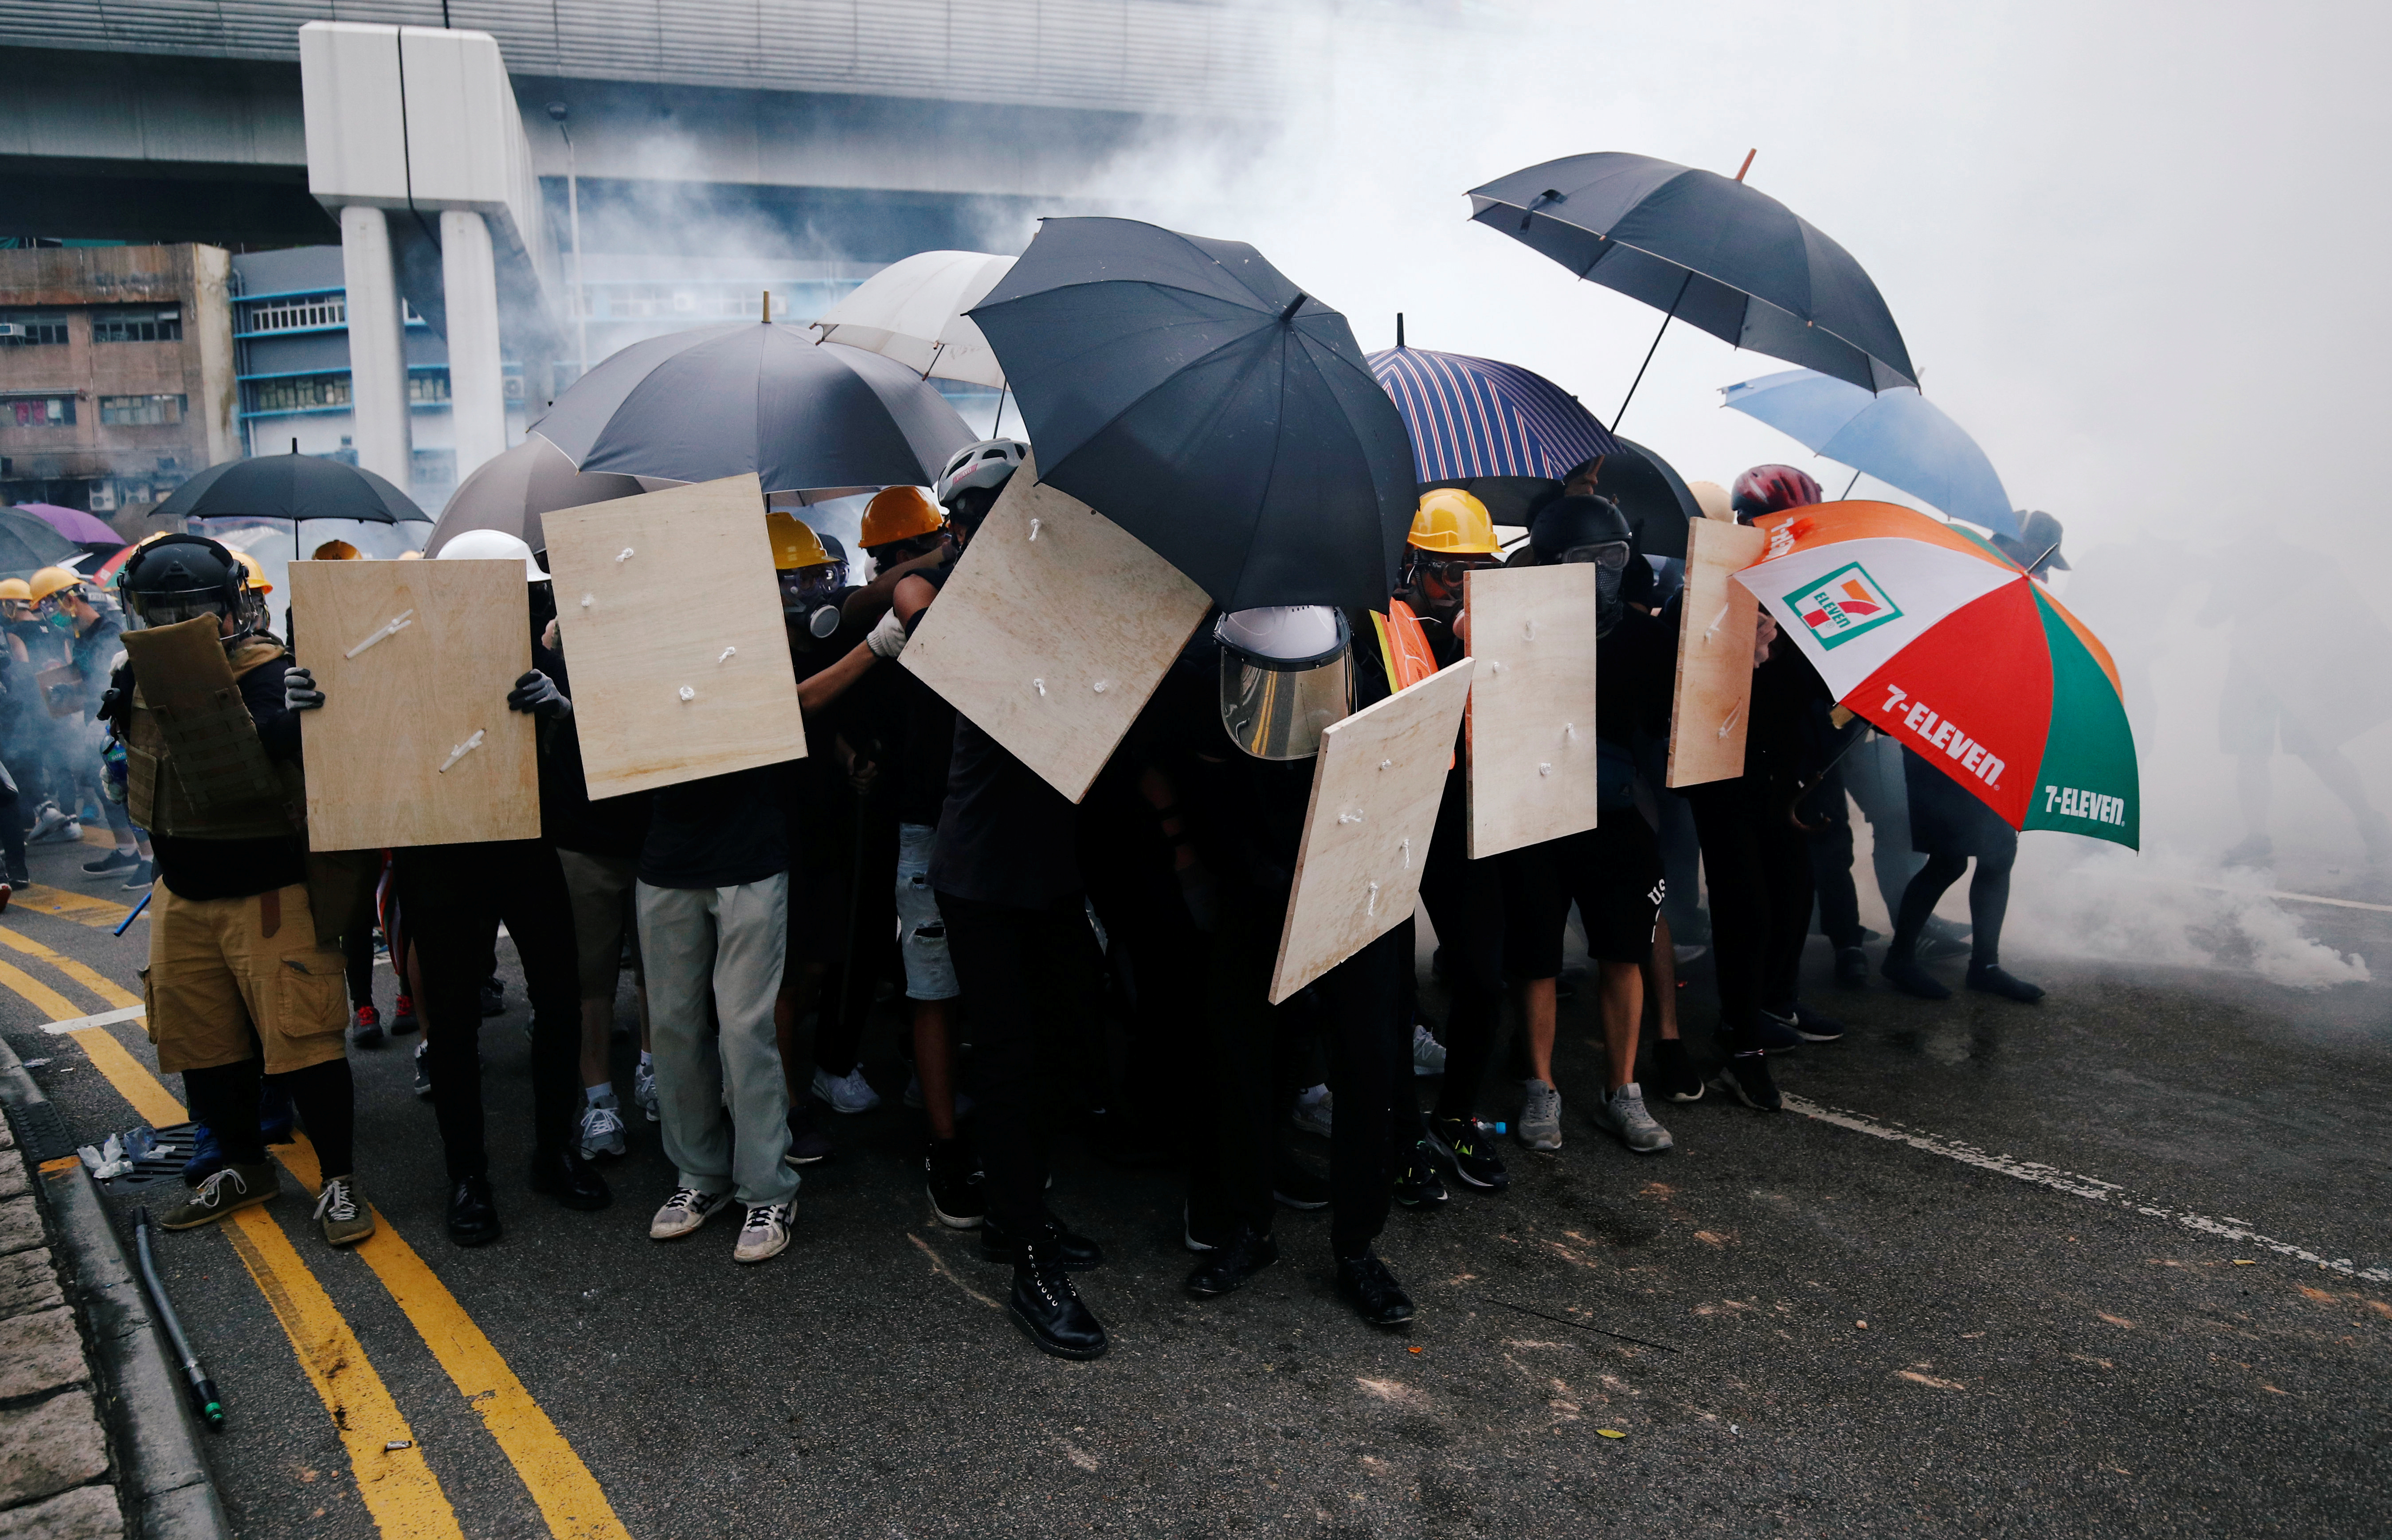 南边围村的示威者打开雨伞等防御工具，部分人情绪激动，不断高叫“警察包庇黑社会。”-路透社-